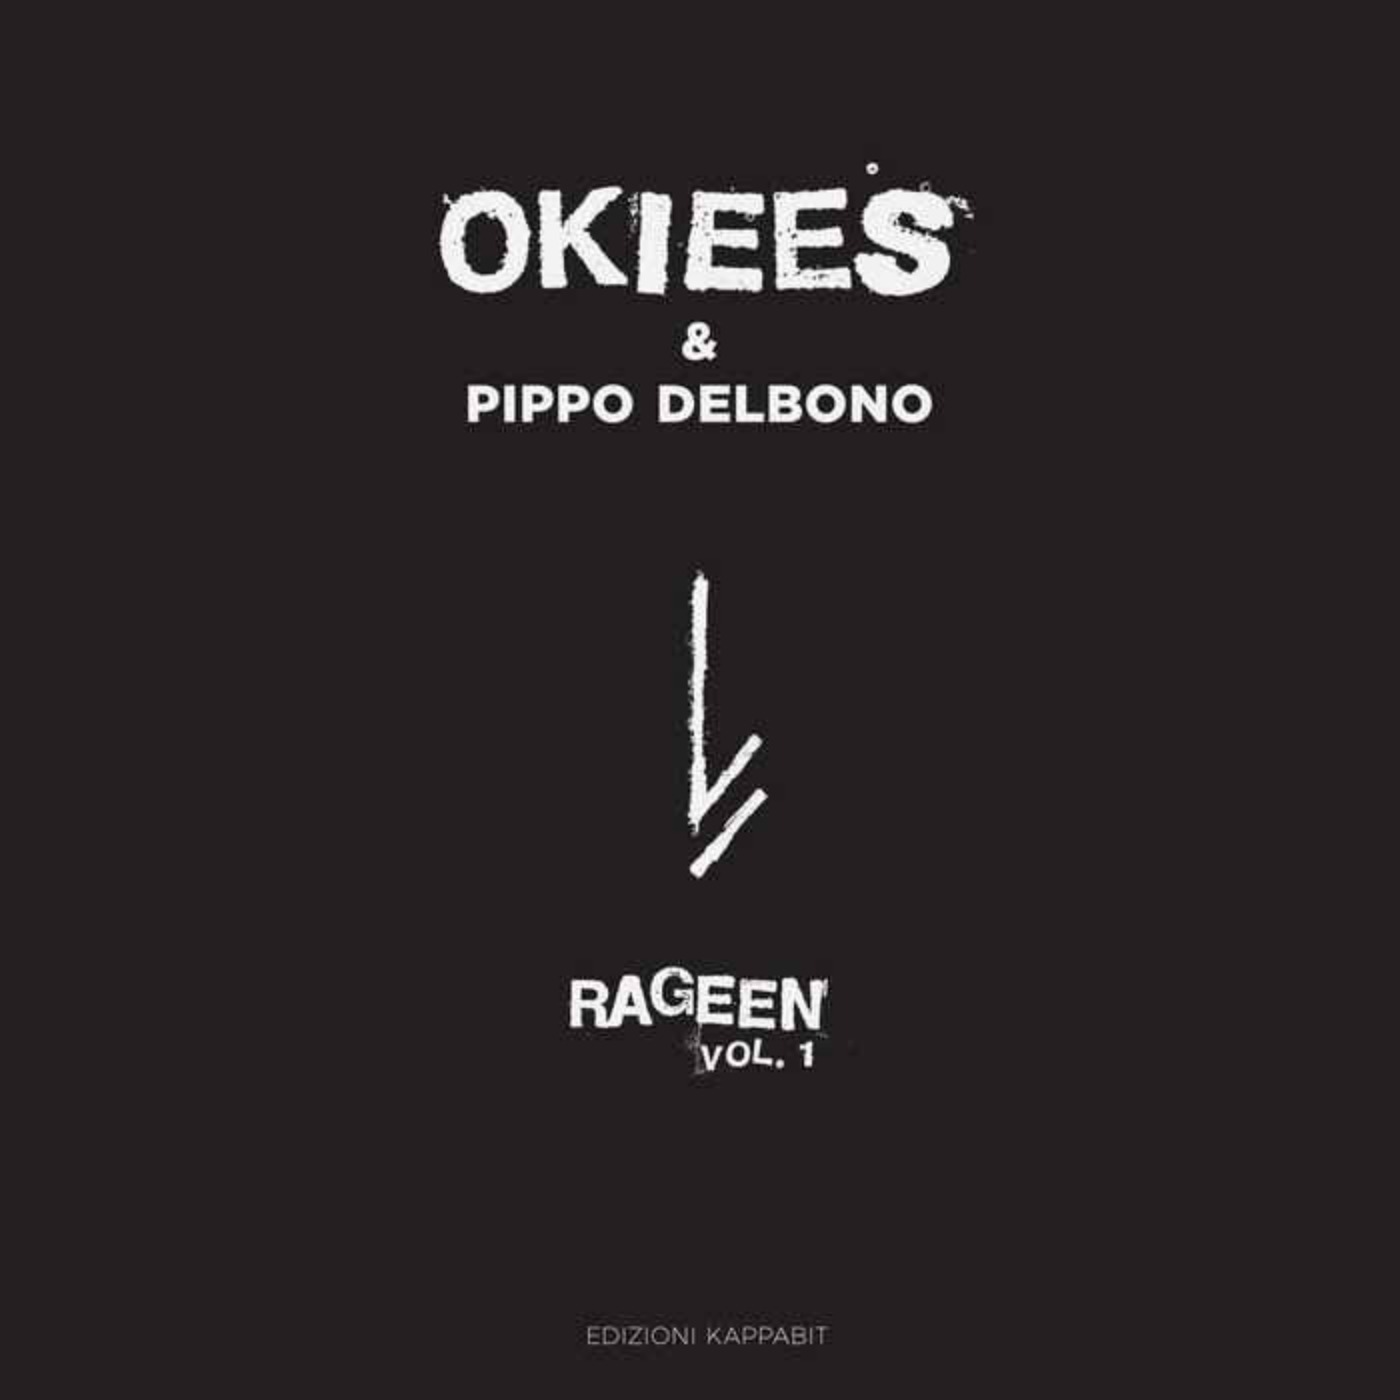 cover art for Okiees, Rageen vol.1: un progetto transmediale tra musica, cinema e letteratura, dedicato ai migranti